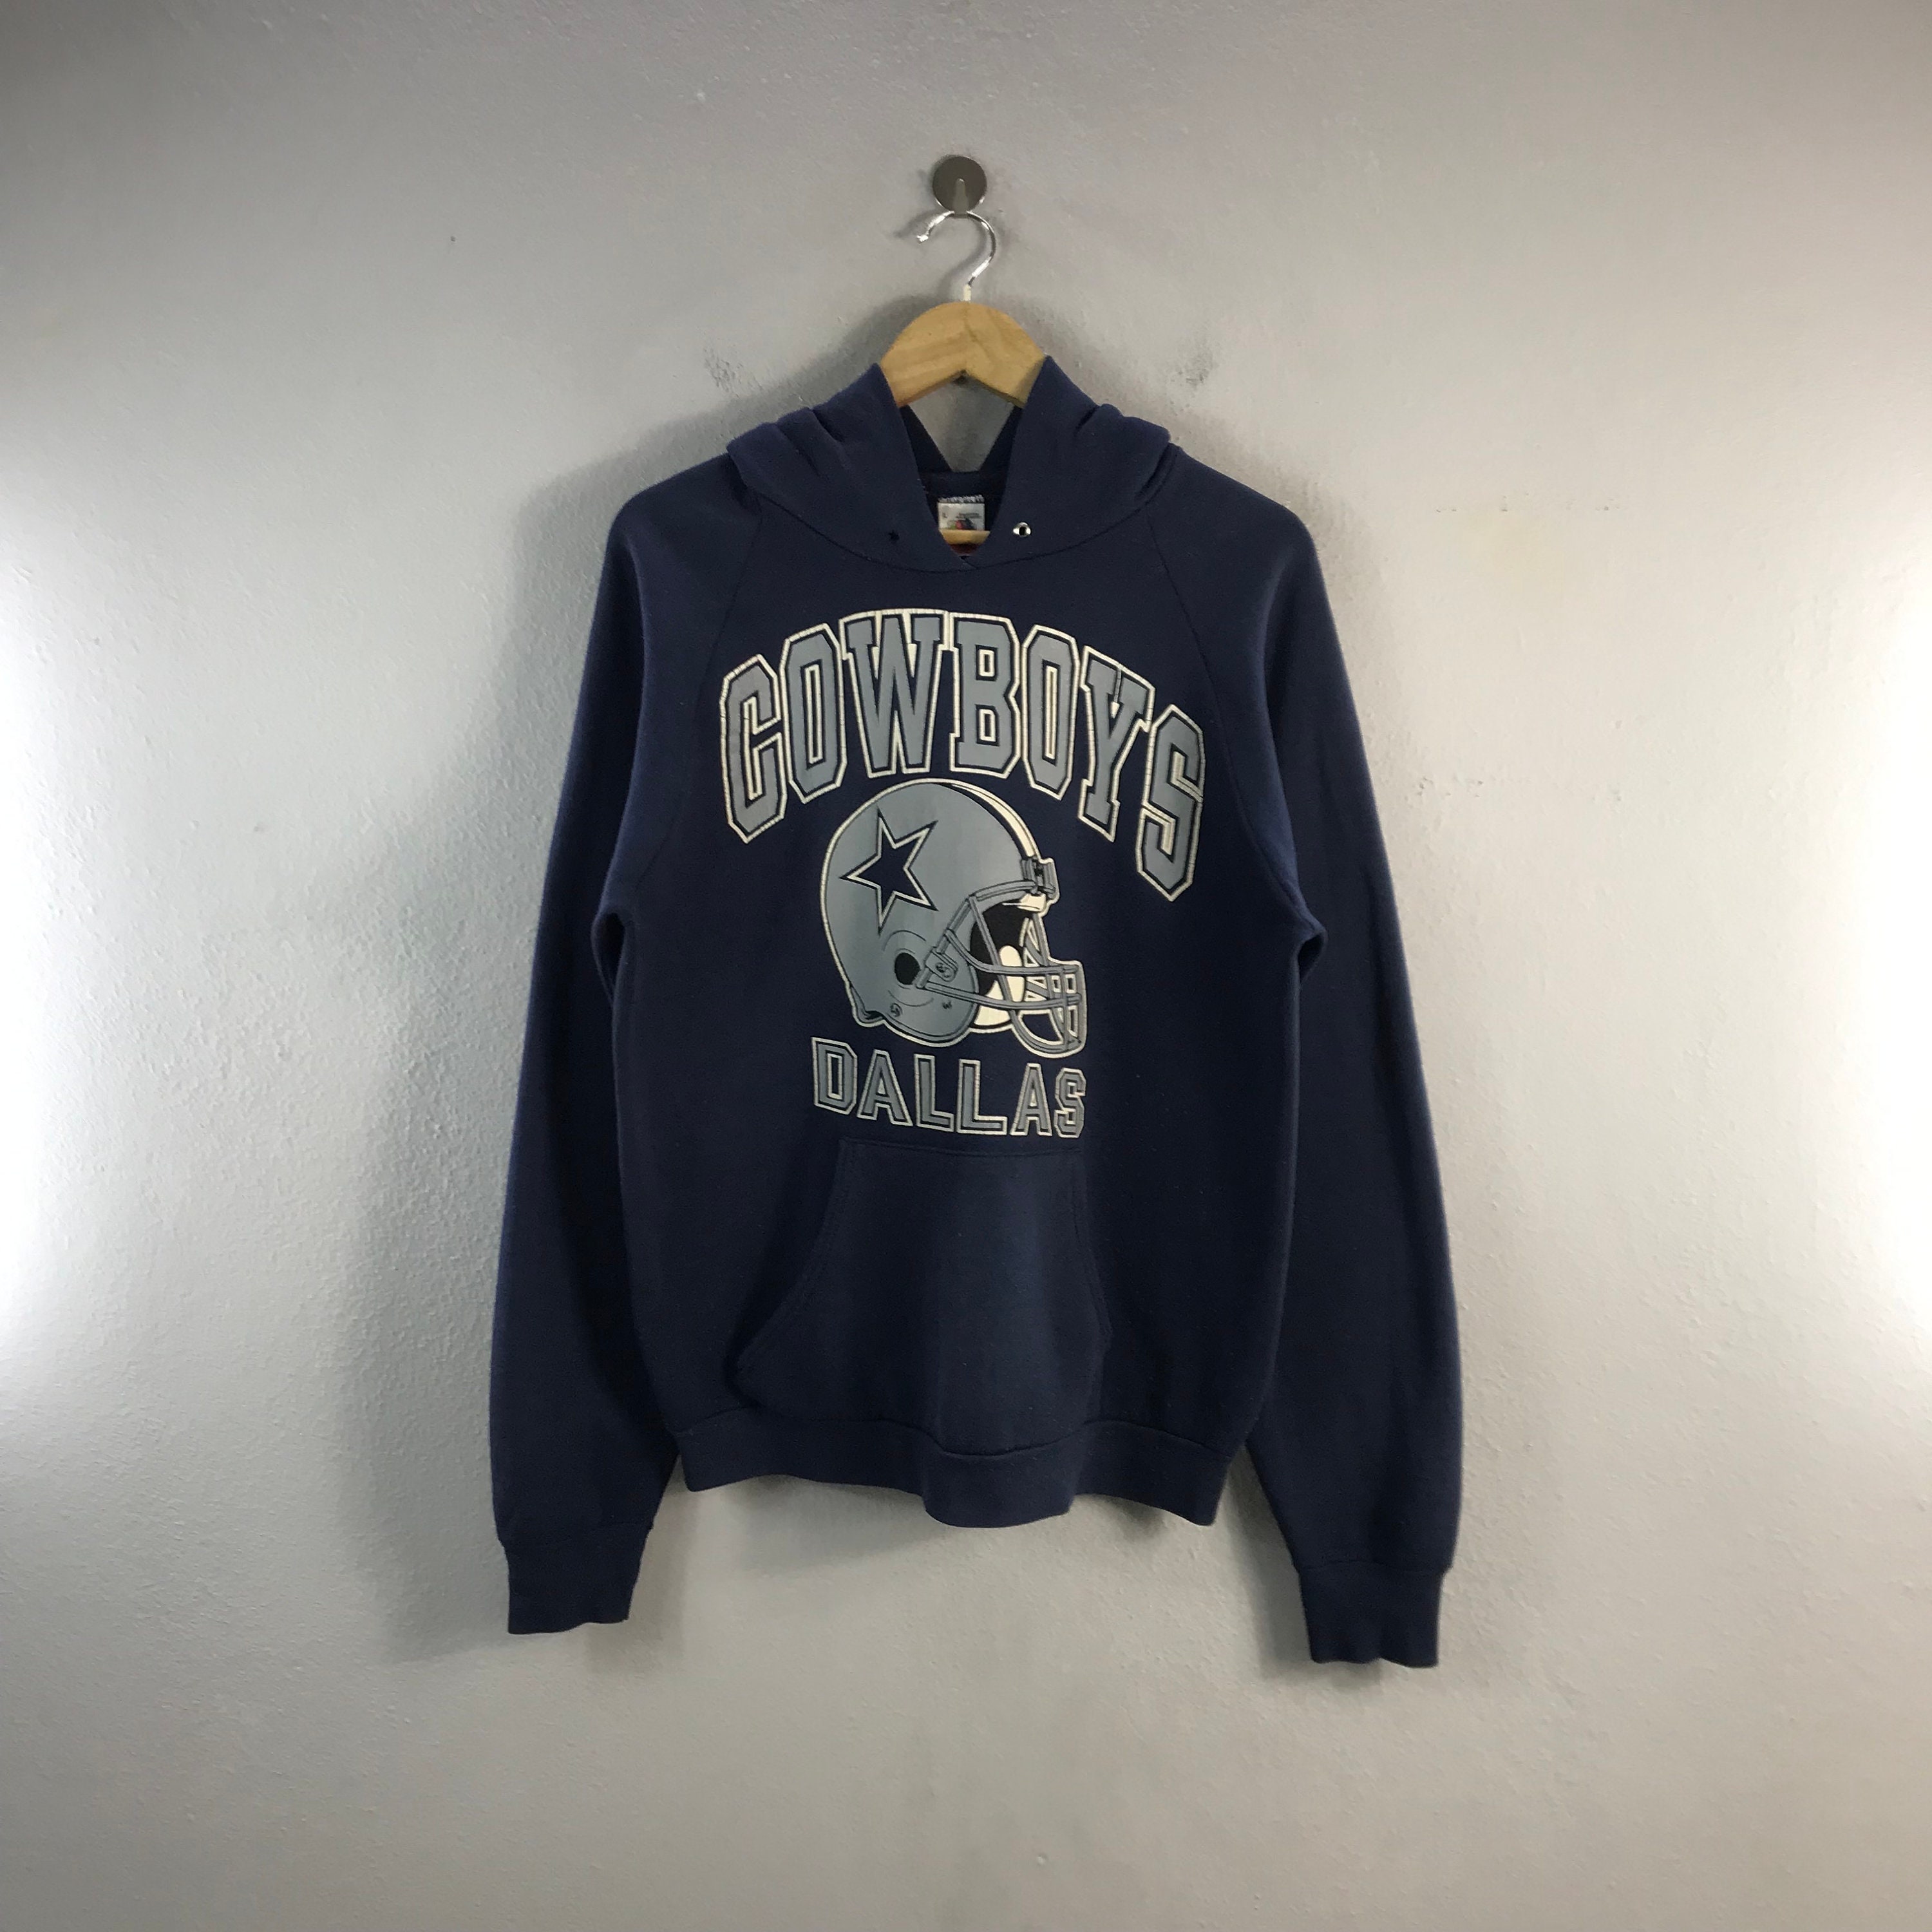 Vintage 90s Grey NFL Dallas Cowboys Sweatshirt - Small Cotton